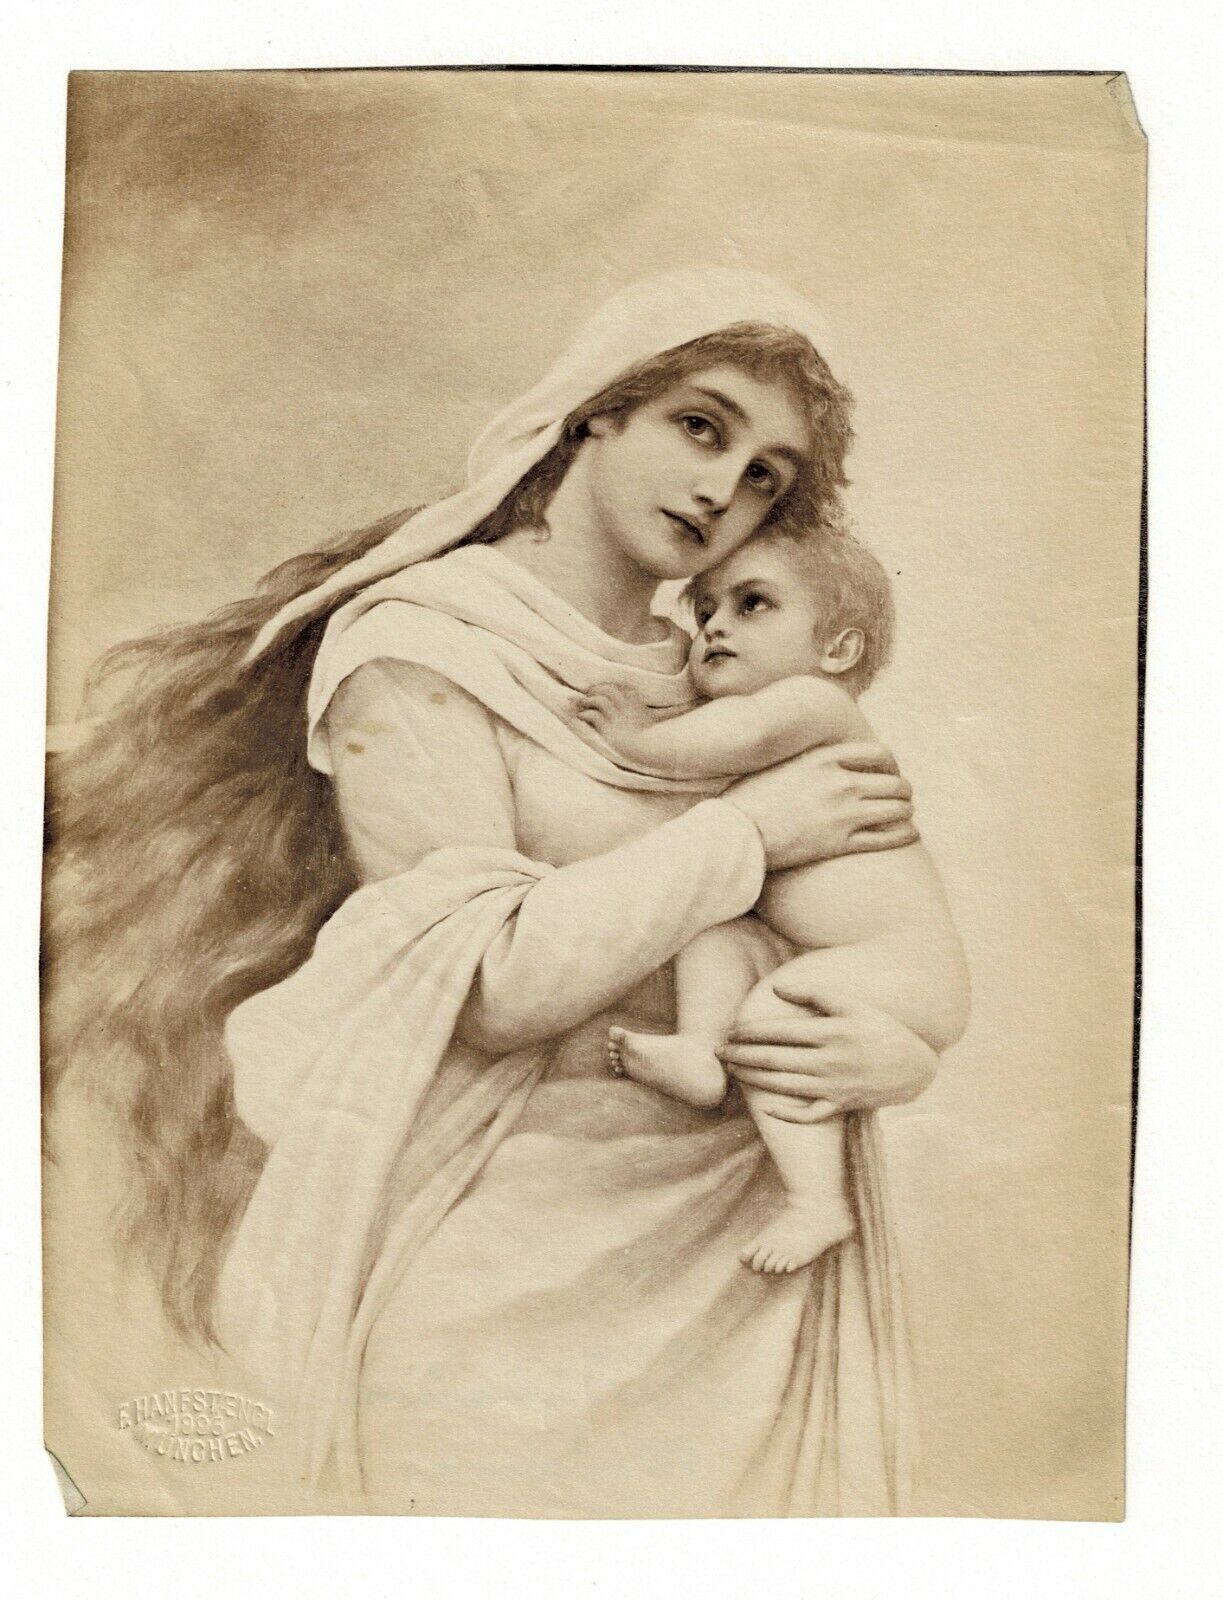 Bodenhausen Madonna & Child Albumen Photo Embossed by Franz Hanfstaengl 1895